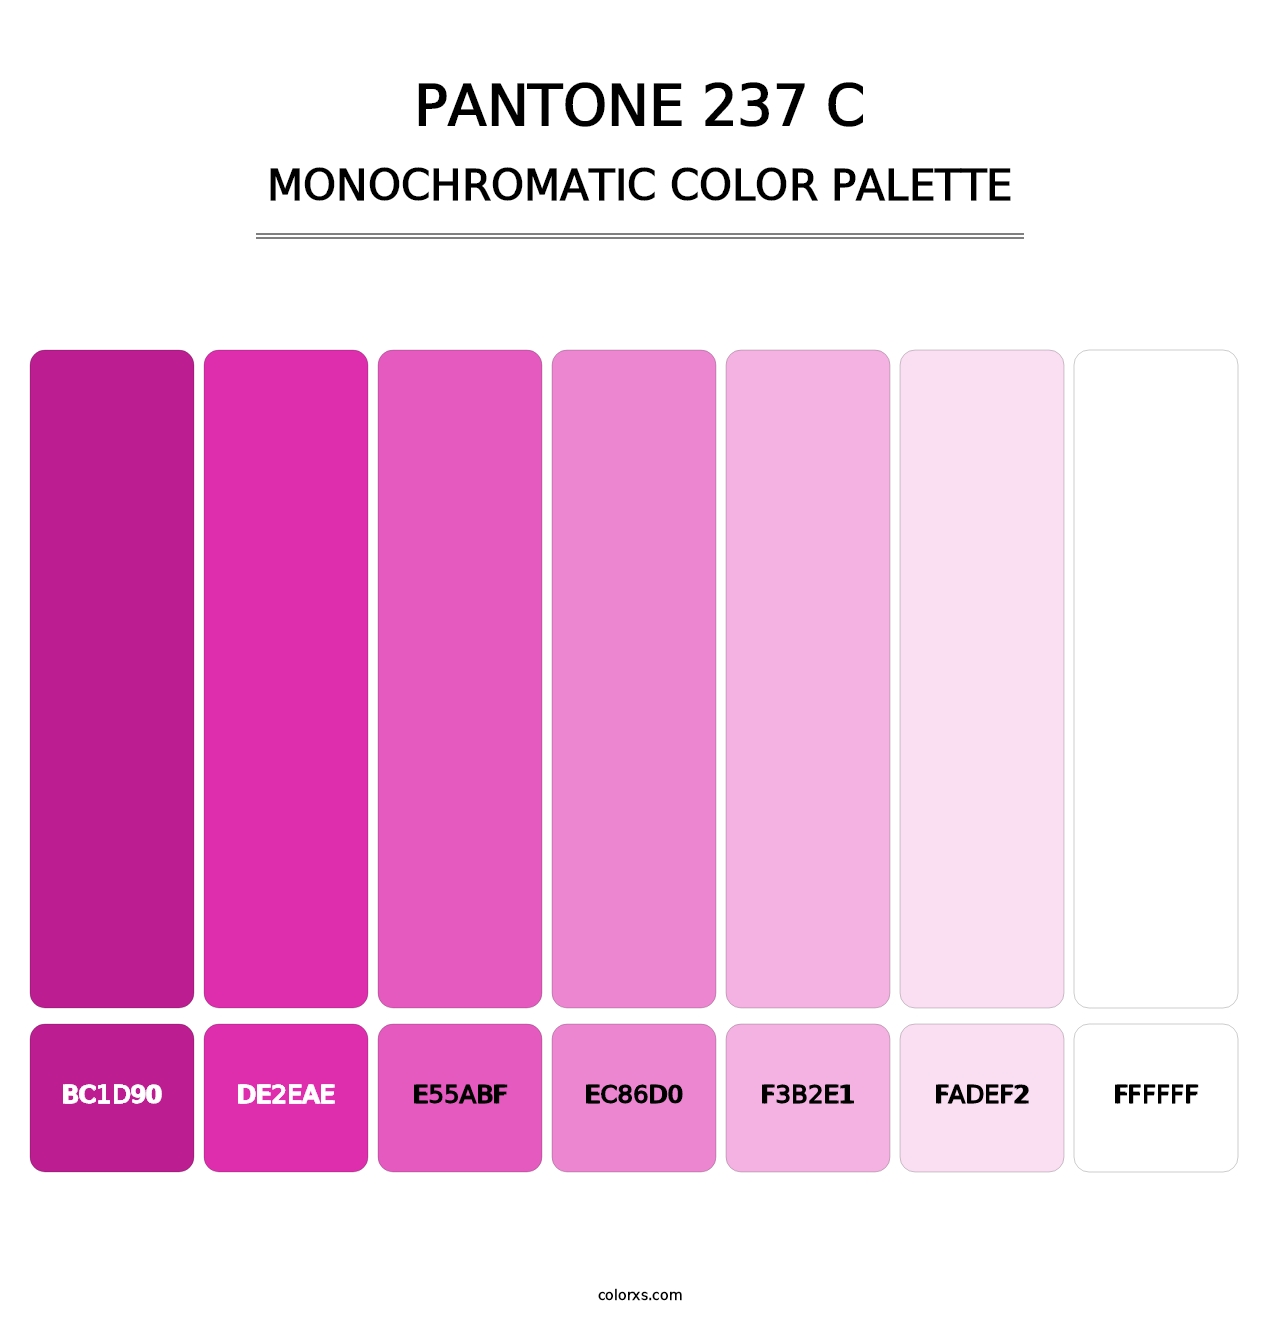 PANTONE 237 C - Monochromatic Color Palette